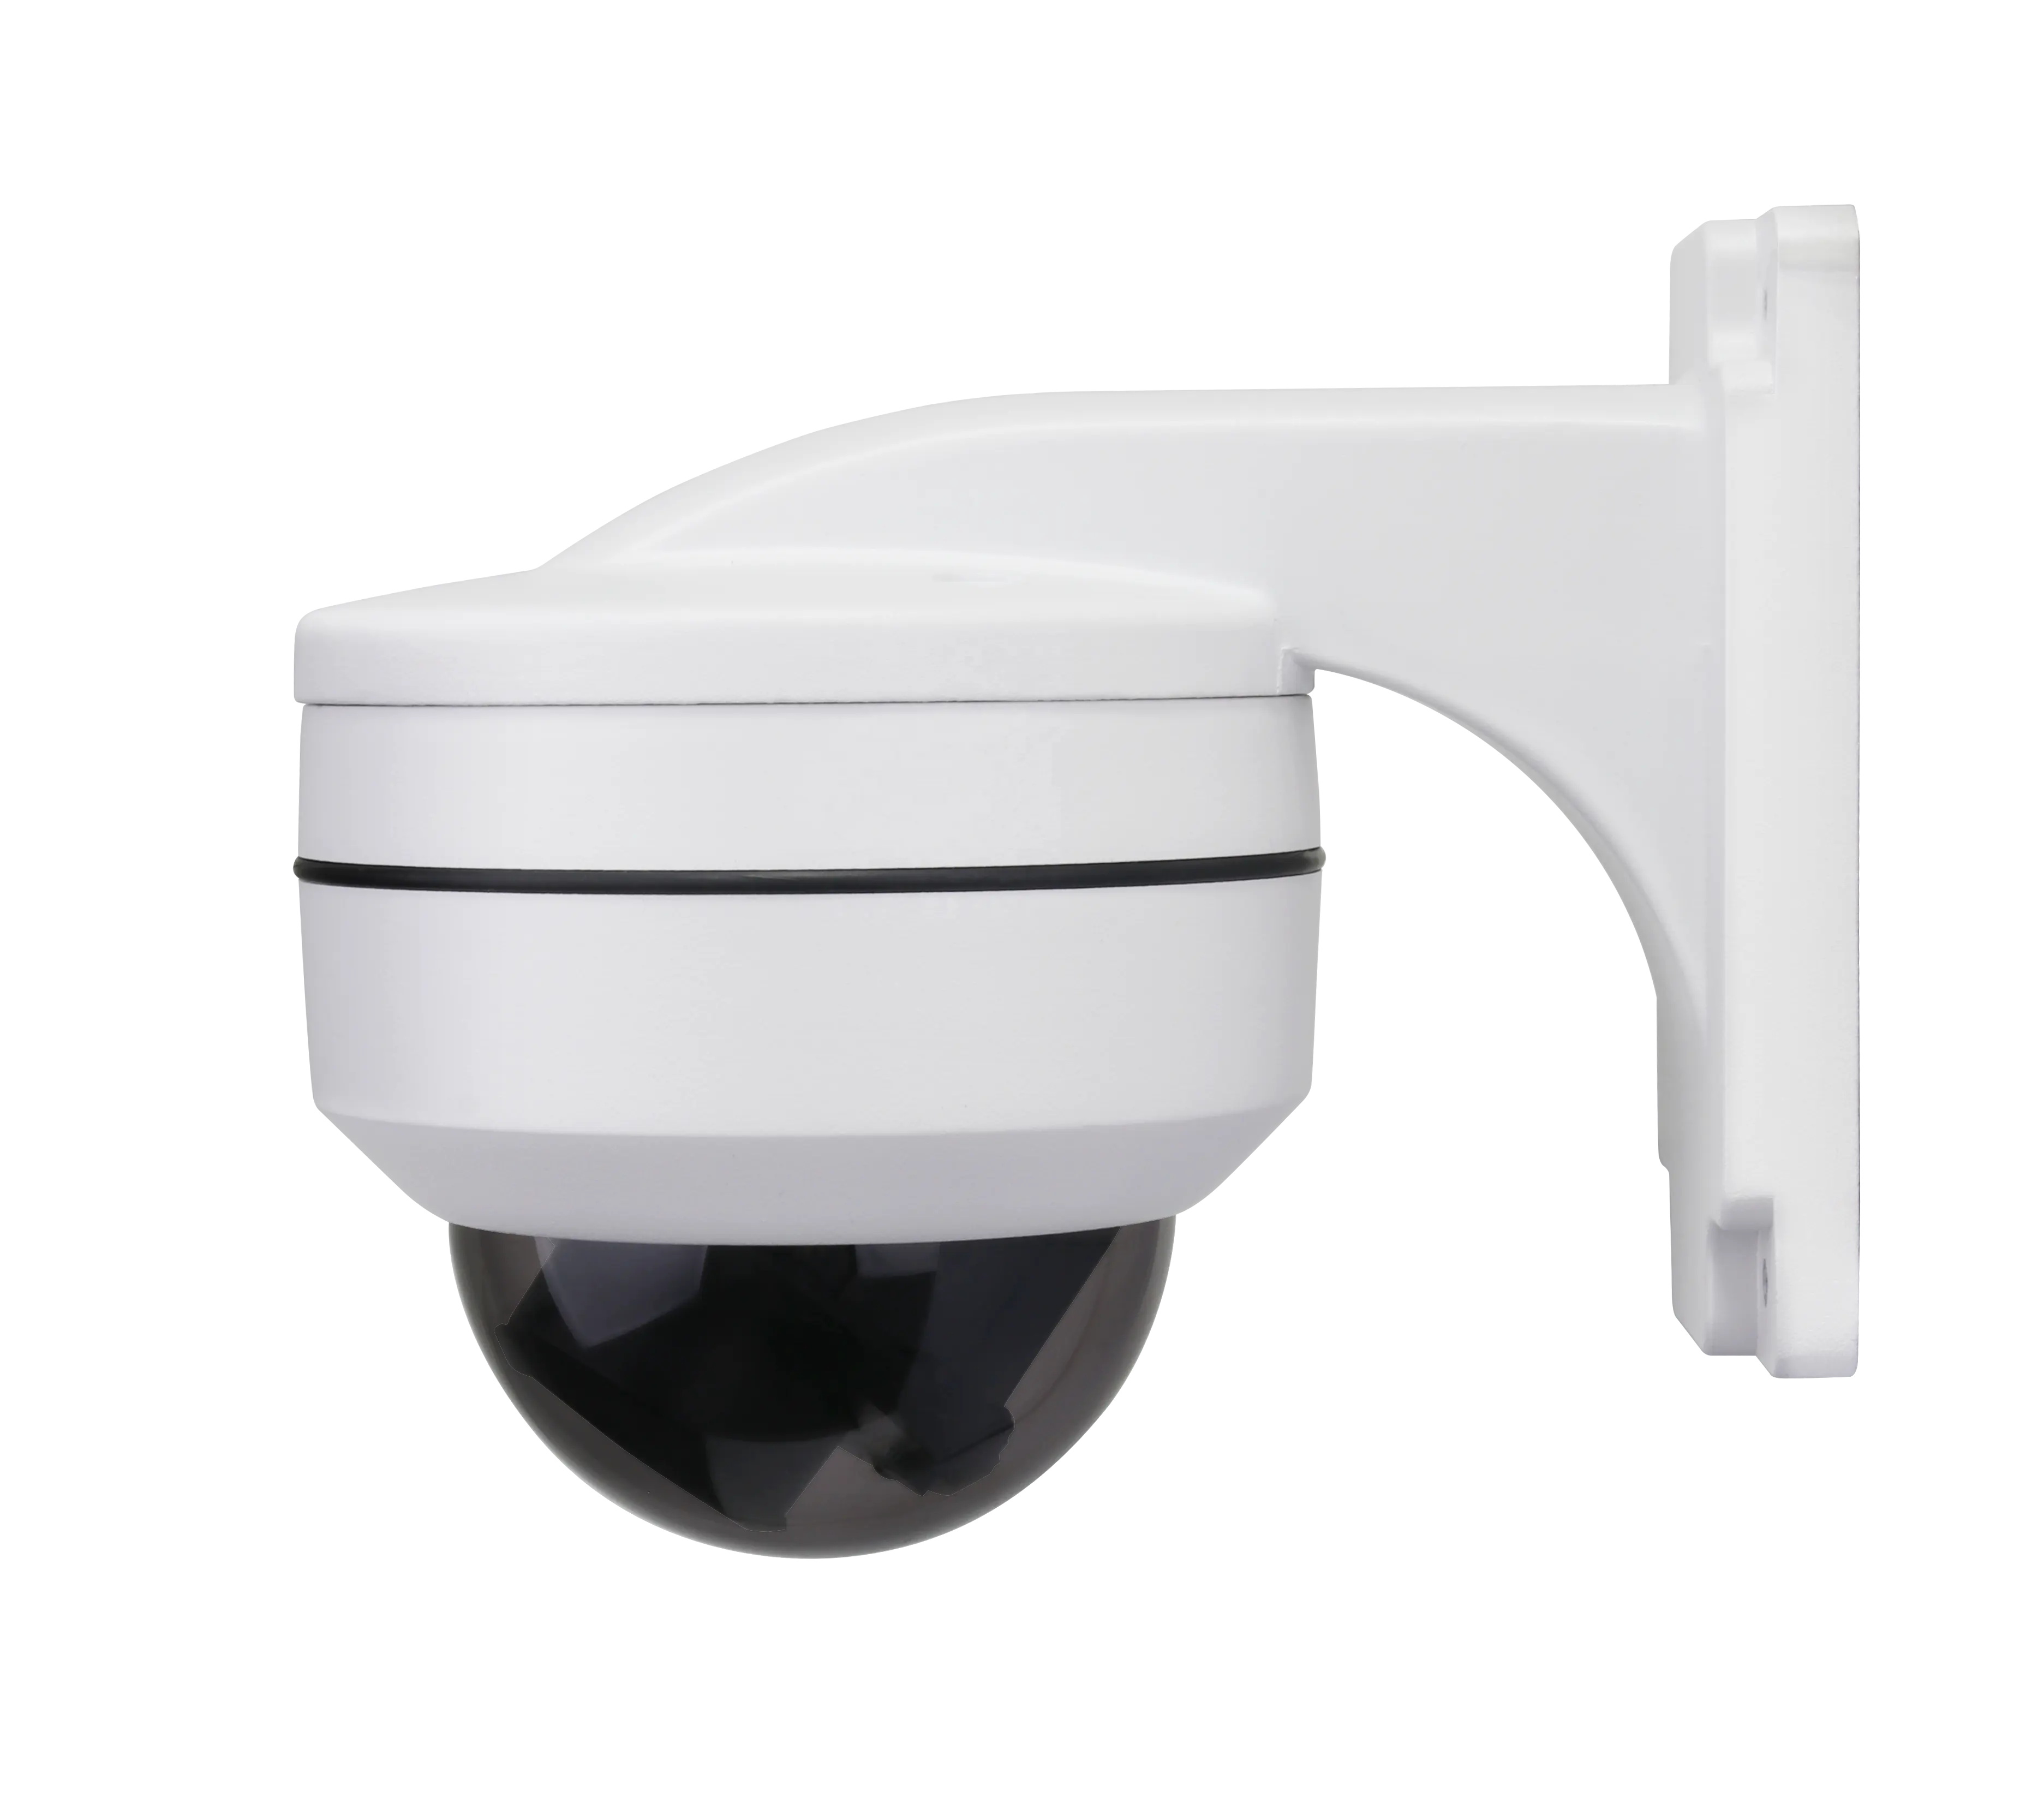 Nouveau produit mini avec application pour téléphone mobile home cctv sécurité surveillance ip ptz caméra avec poe outdoor